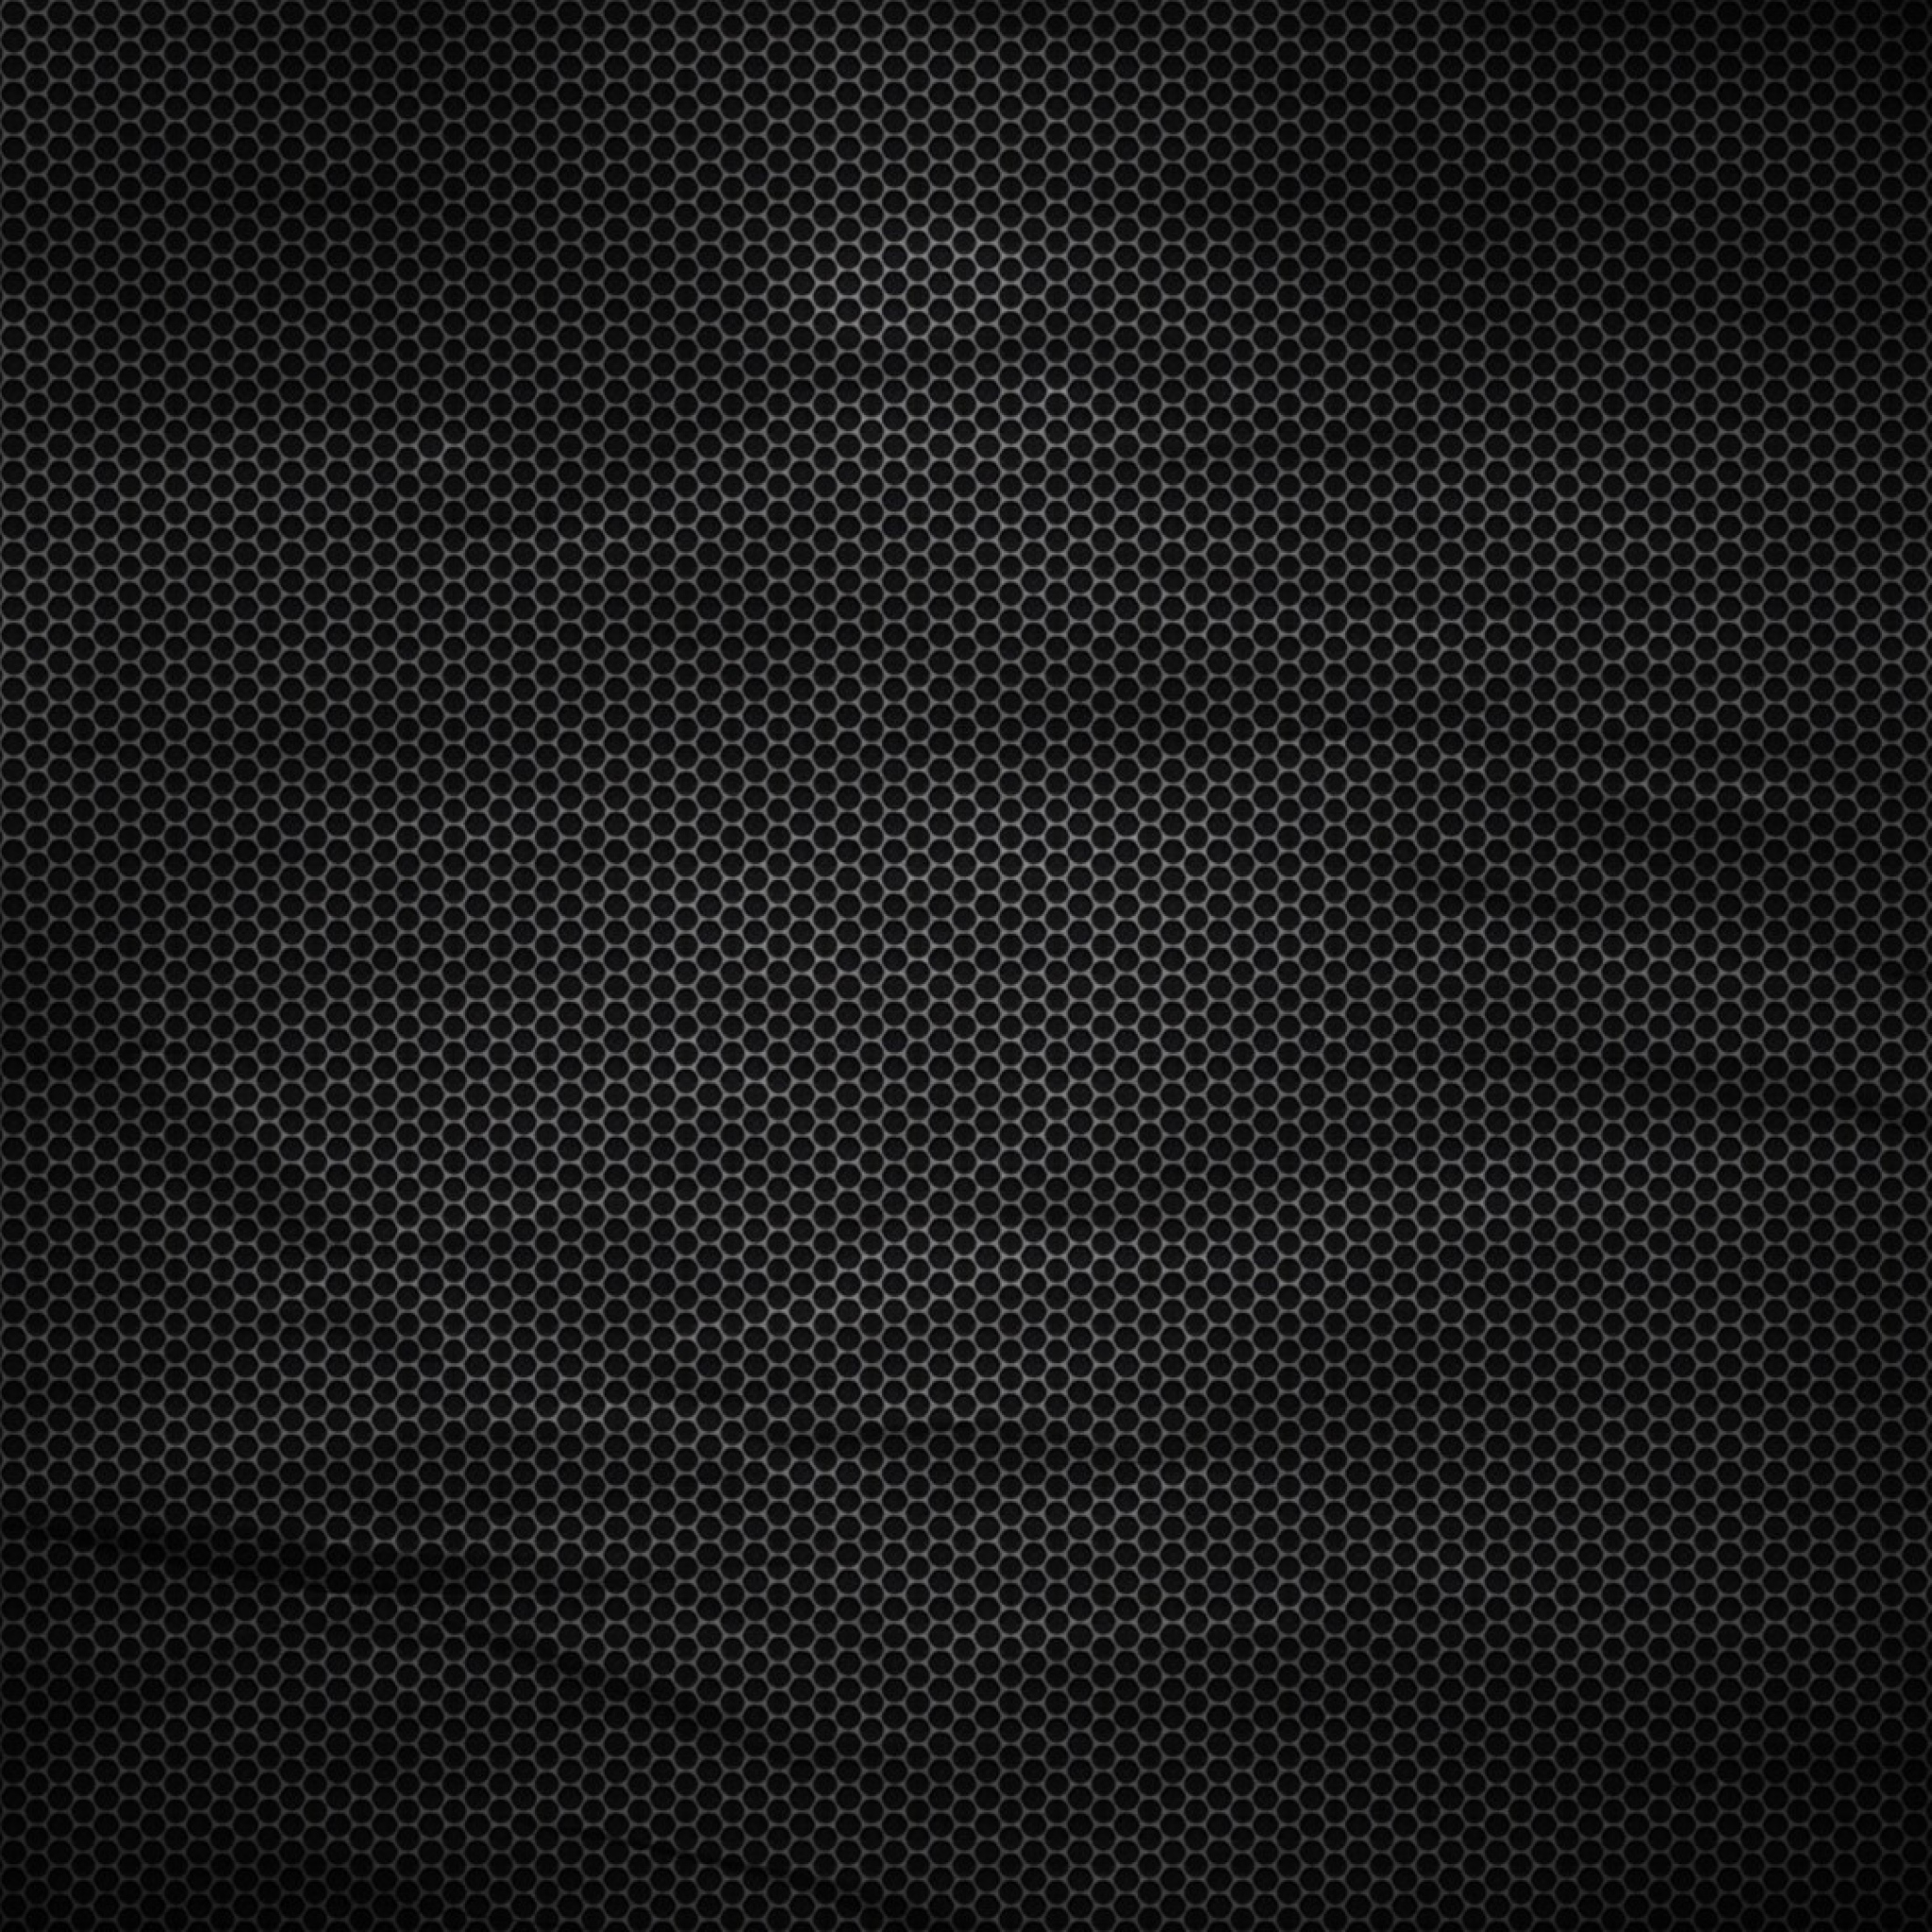  Size Dark Wallpaper Background New iPad Air 4 3 iPad mini Retina